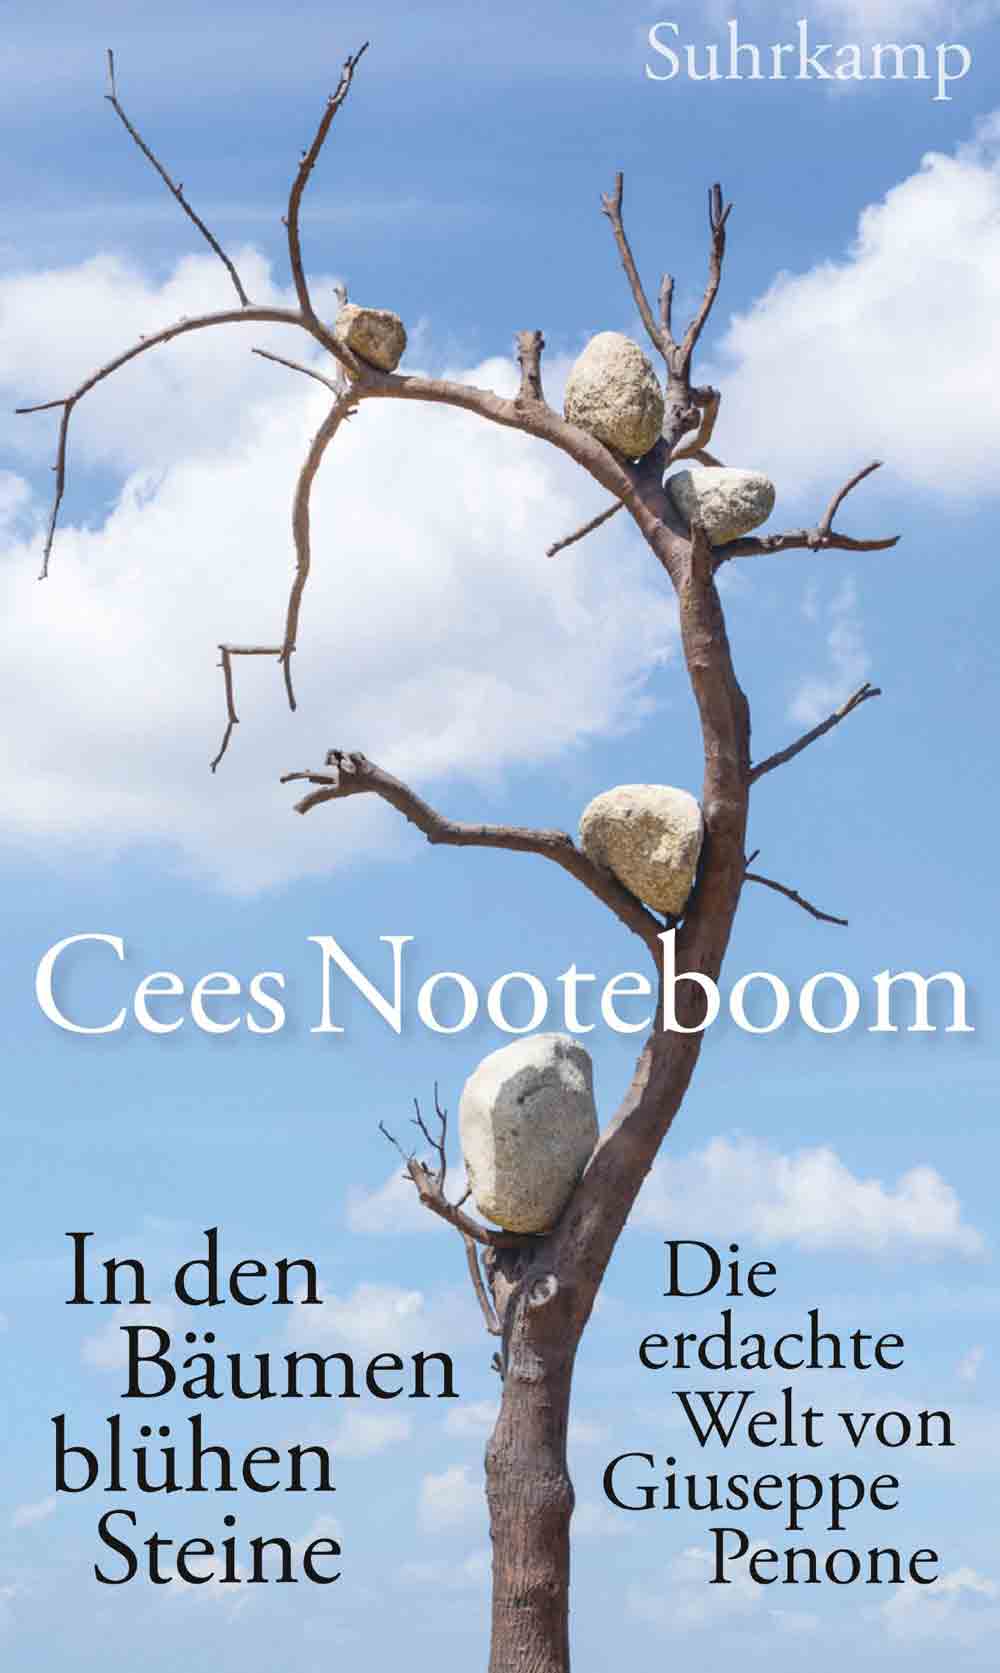 Lesetipps für Gütersloh, Suhrkamp Insel Neuerscheinungen im Juli 2023, das neue Buch von Cees Nooteboom